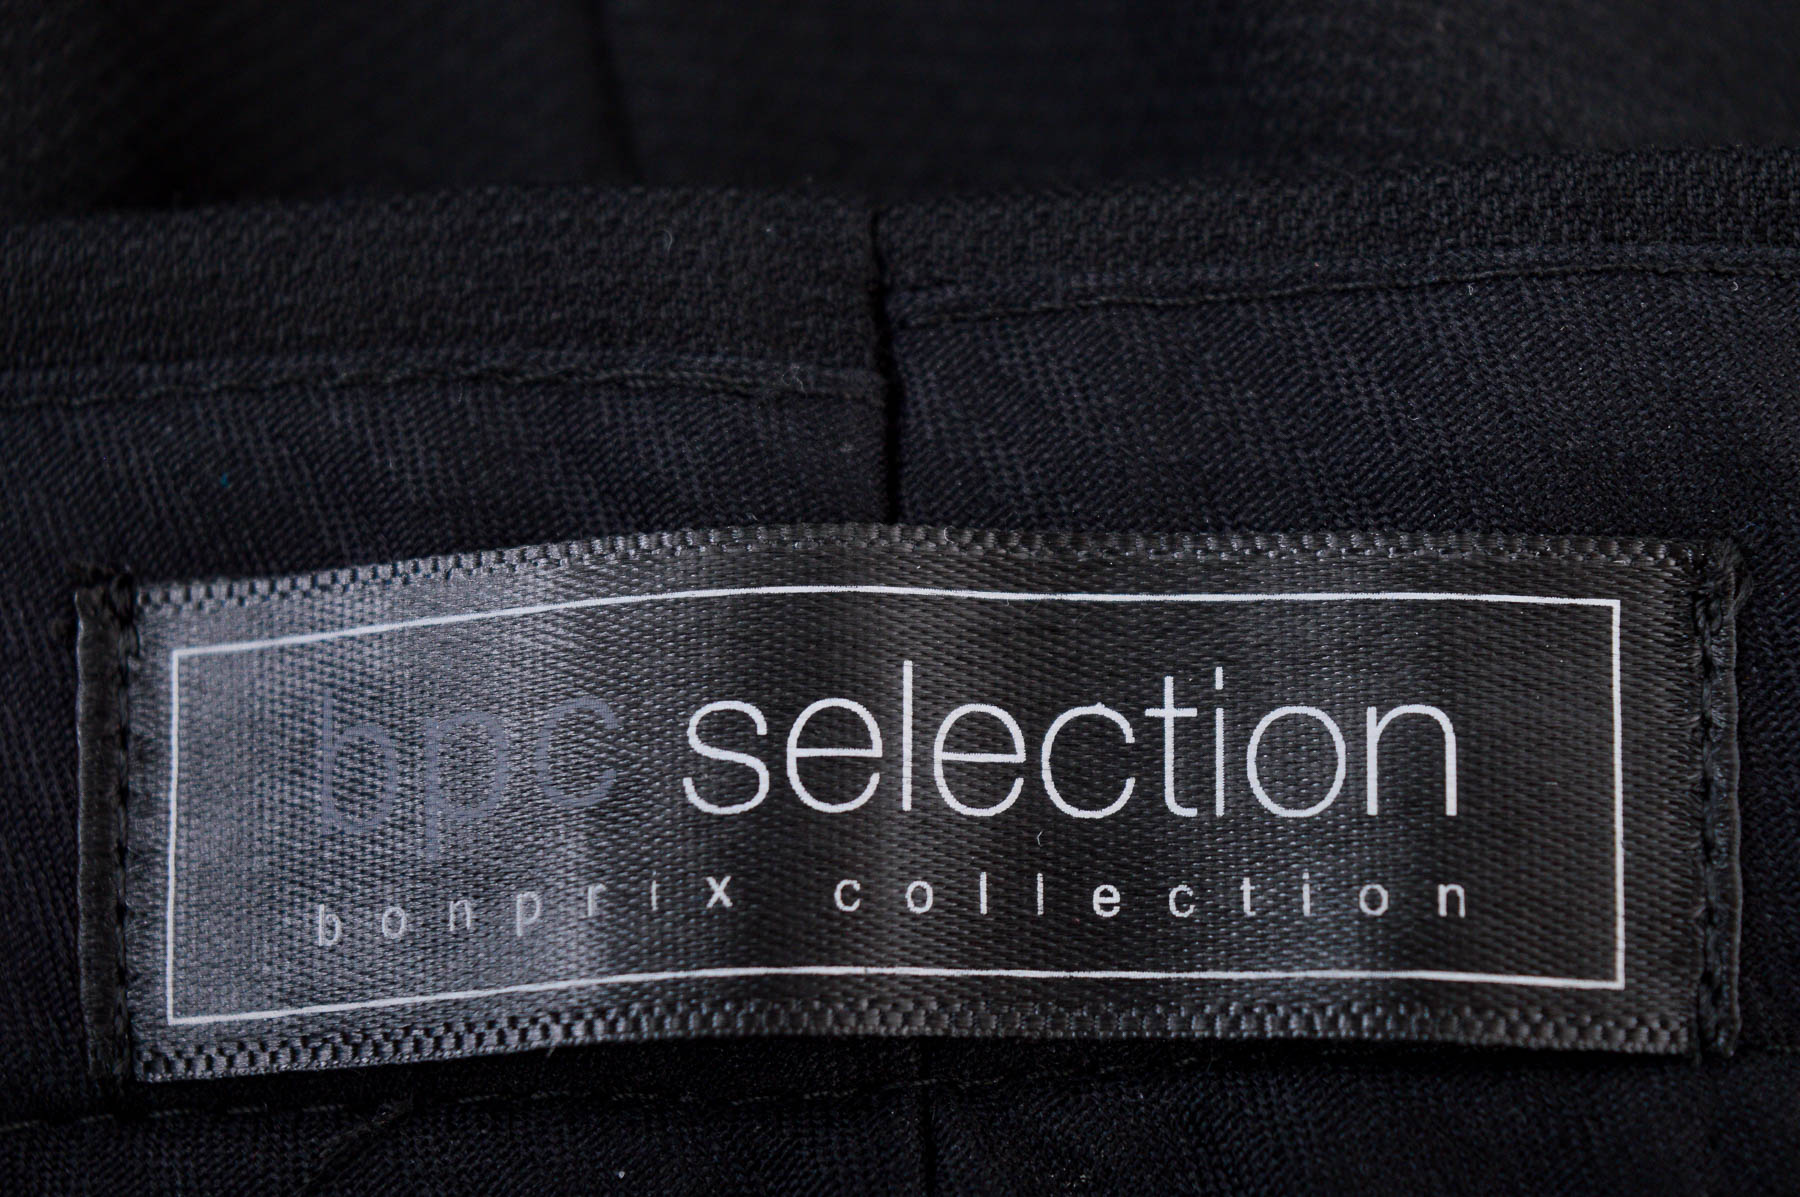 Men's trousers - Bpc selection bonprix collection - 2